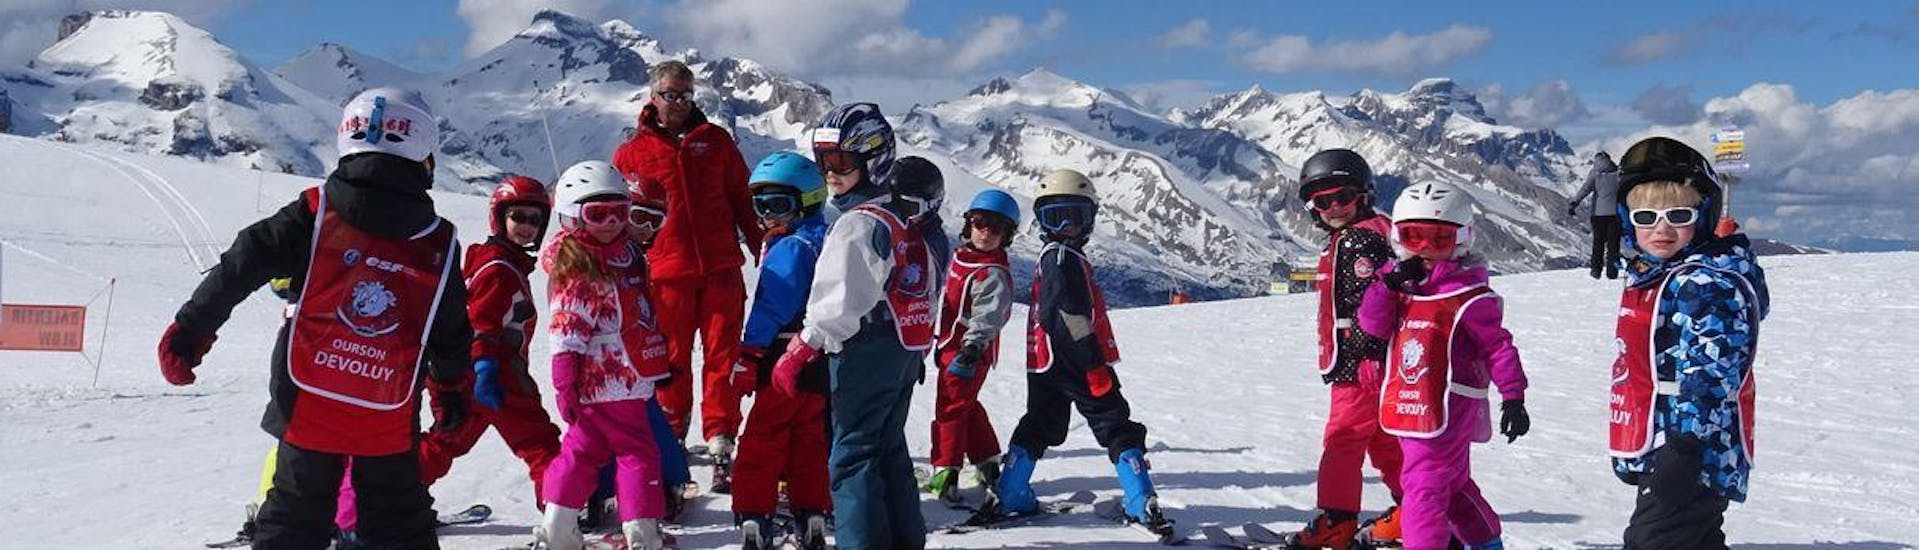 Skilessen voor kinderen vanaf 6 jaar.